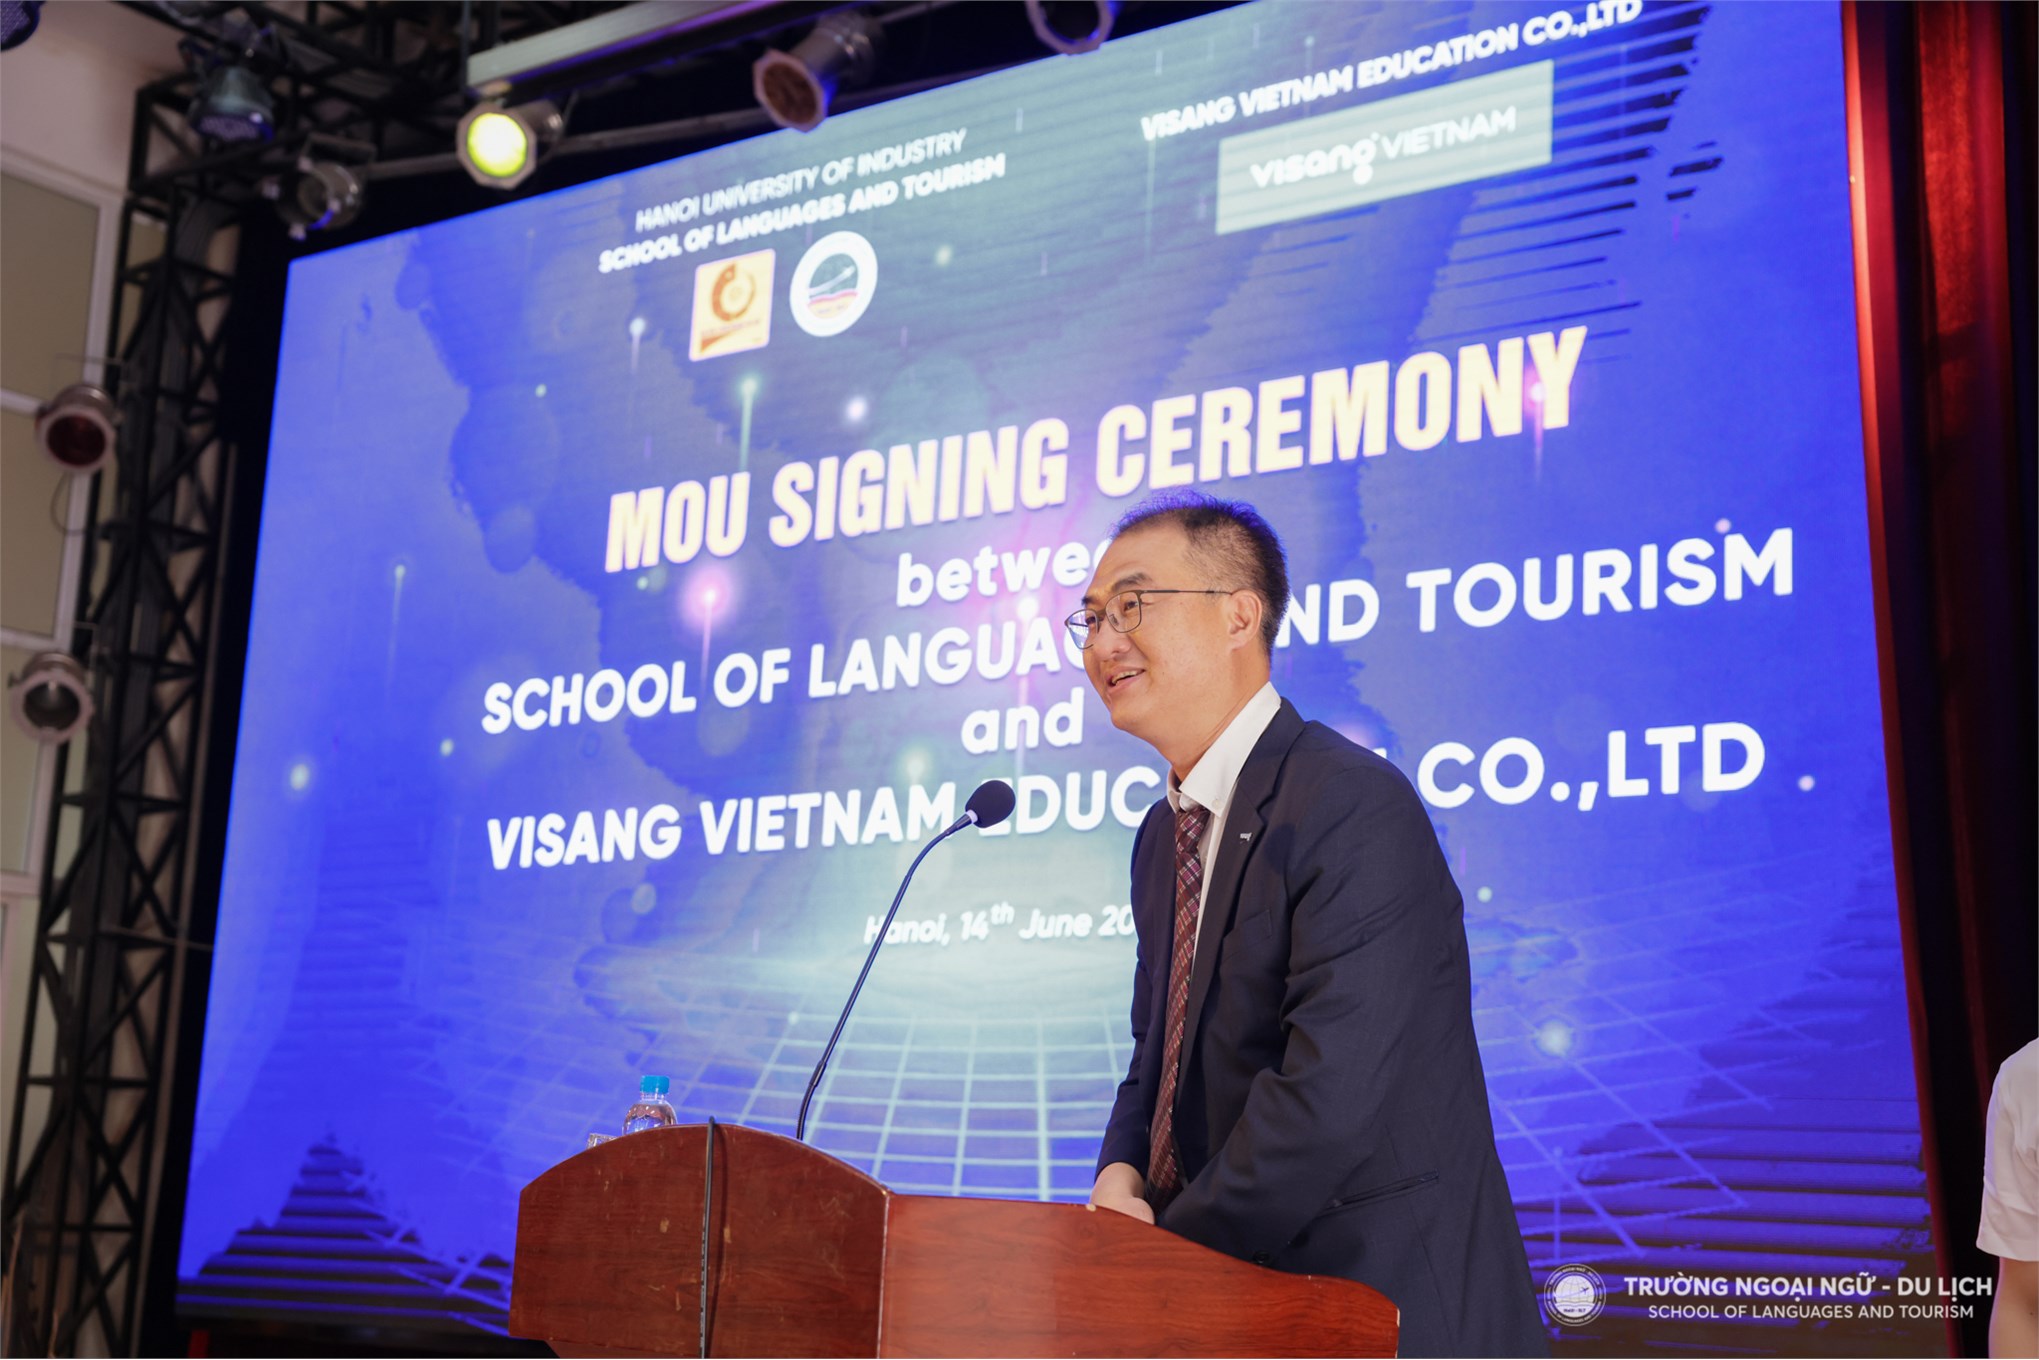 Lễ ký kết biên bản ghi nhớ hợp tác (MOU) với Công ty Visang Education